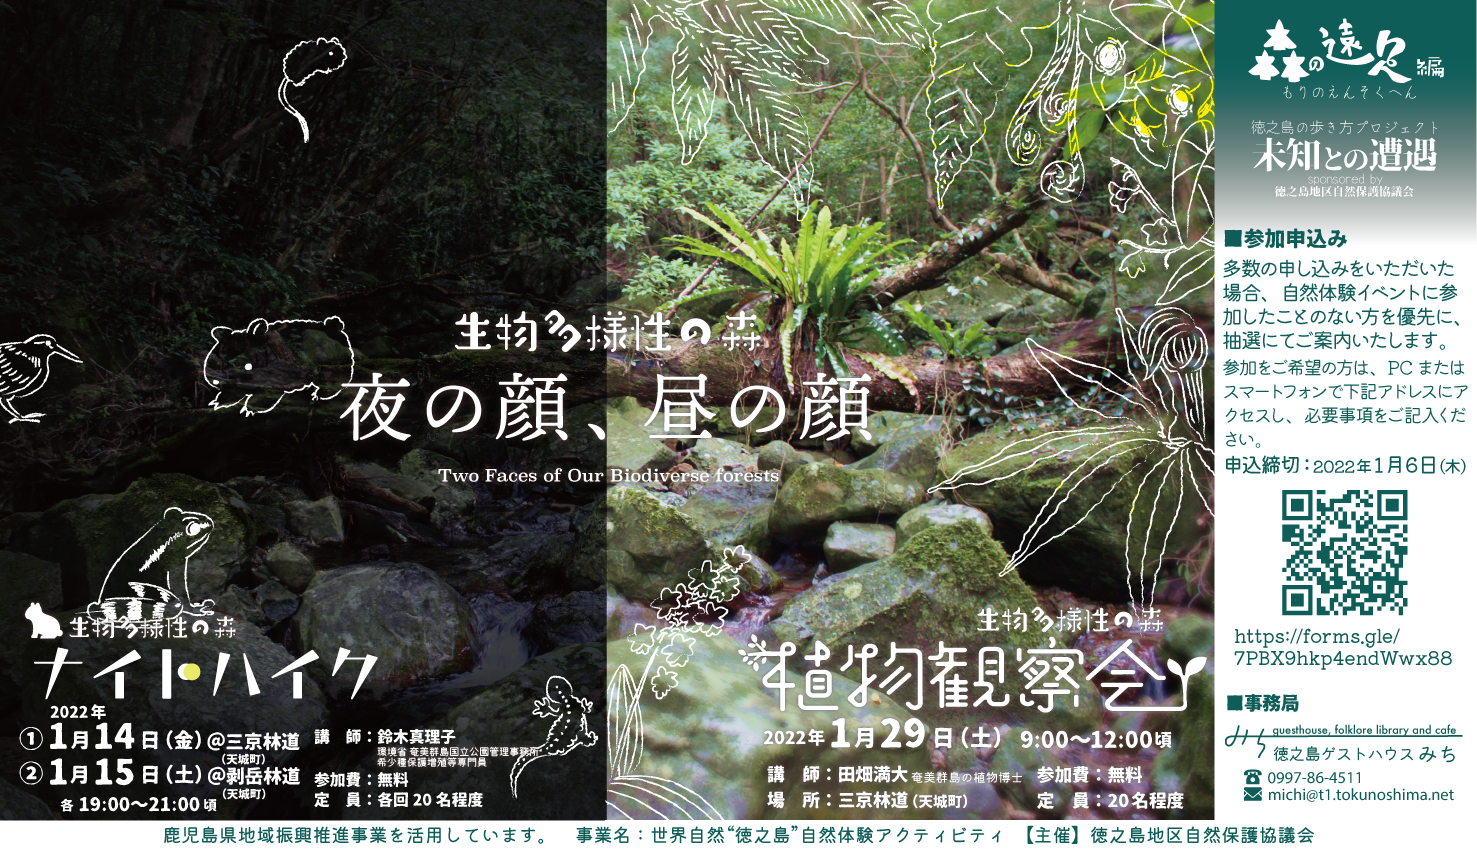 【2022/1/29日】生物多様性の森 植物観察会